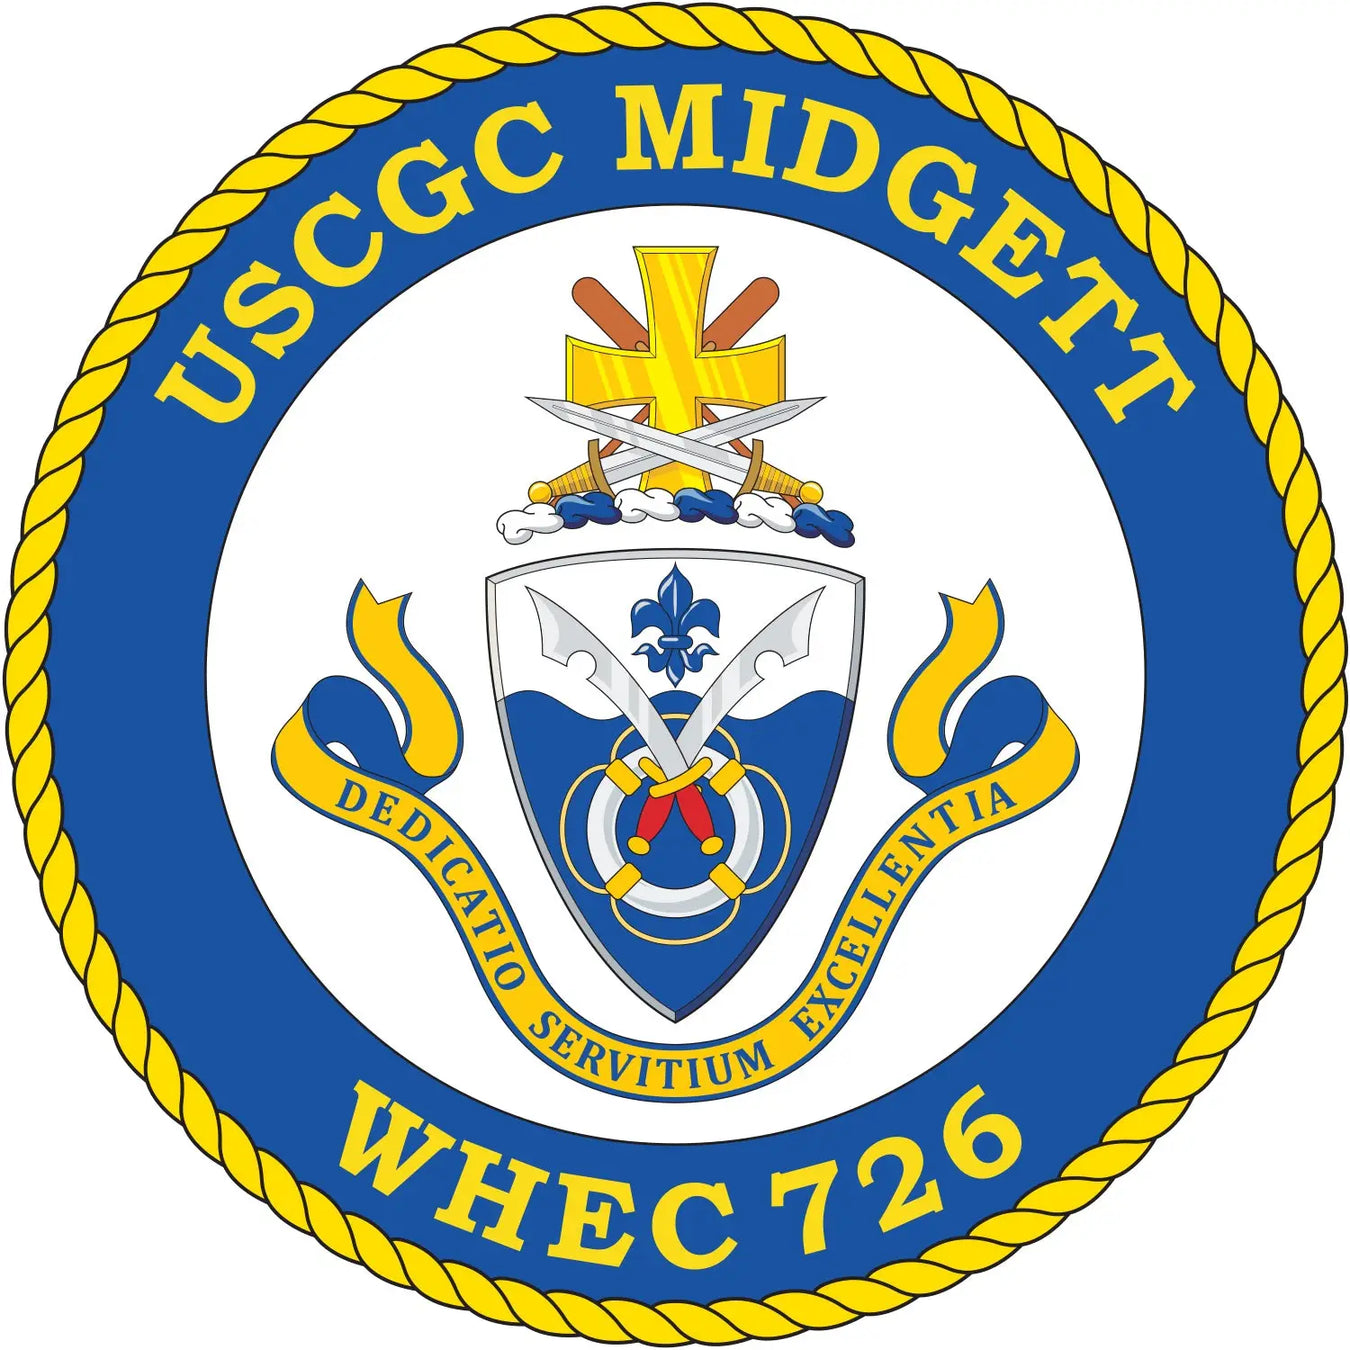 USCGC Midgett WHEC-726)